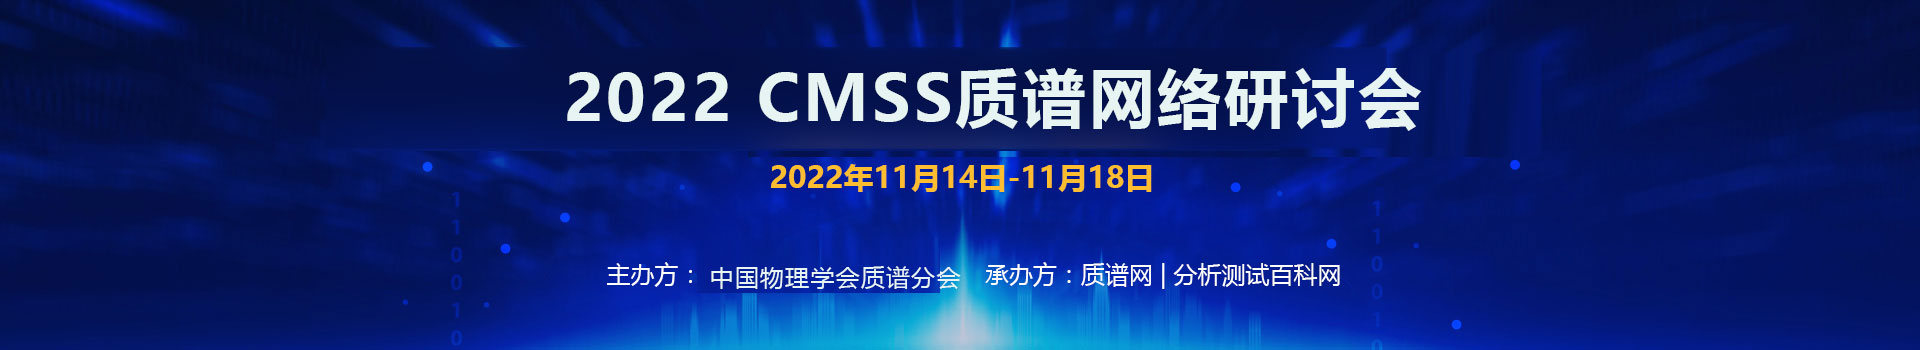 2022 CMSS质谱网络研讨会